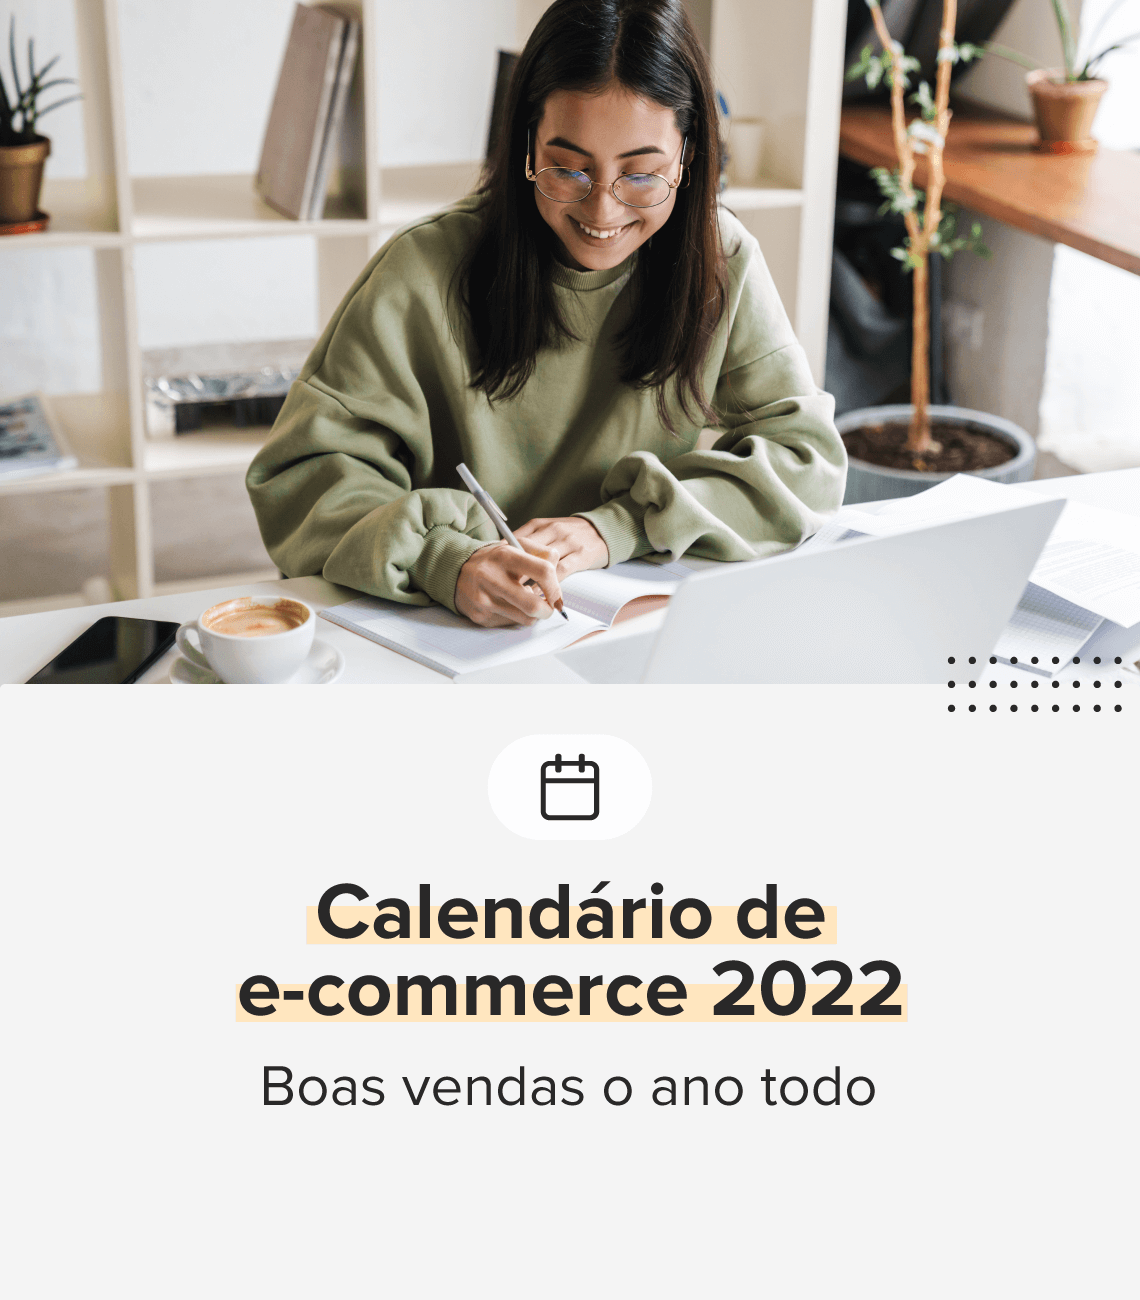 Calendário de e-commerce 2022